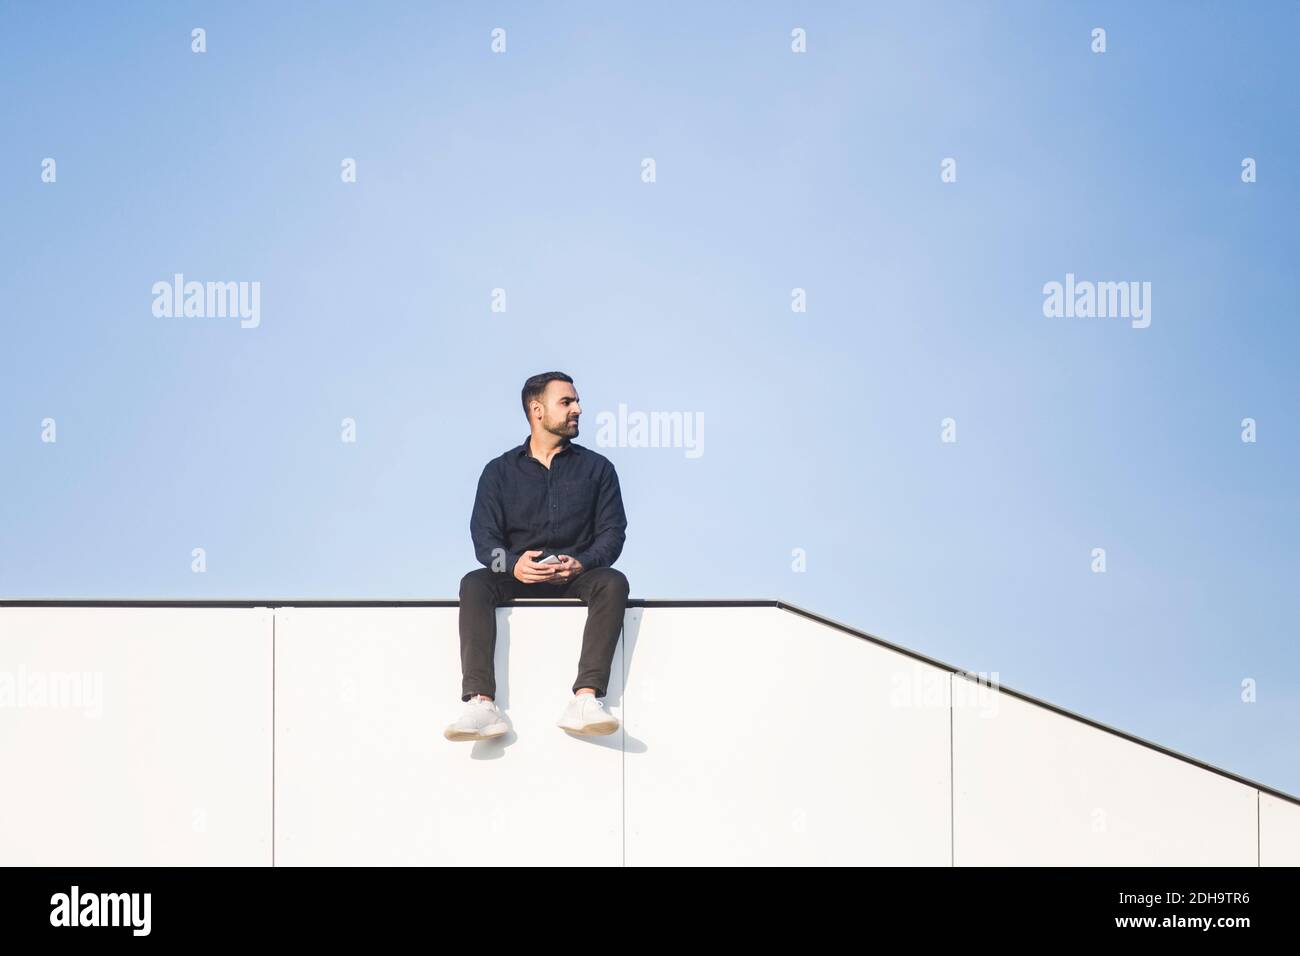 Betrachtend Mann wegschauen, während er auf gebauter Struktur gegen sitzt Blauer Himmel Stockfoto